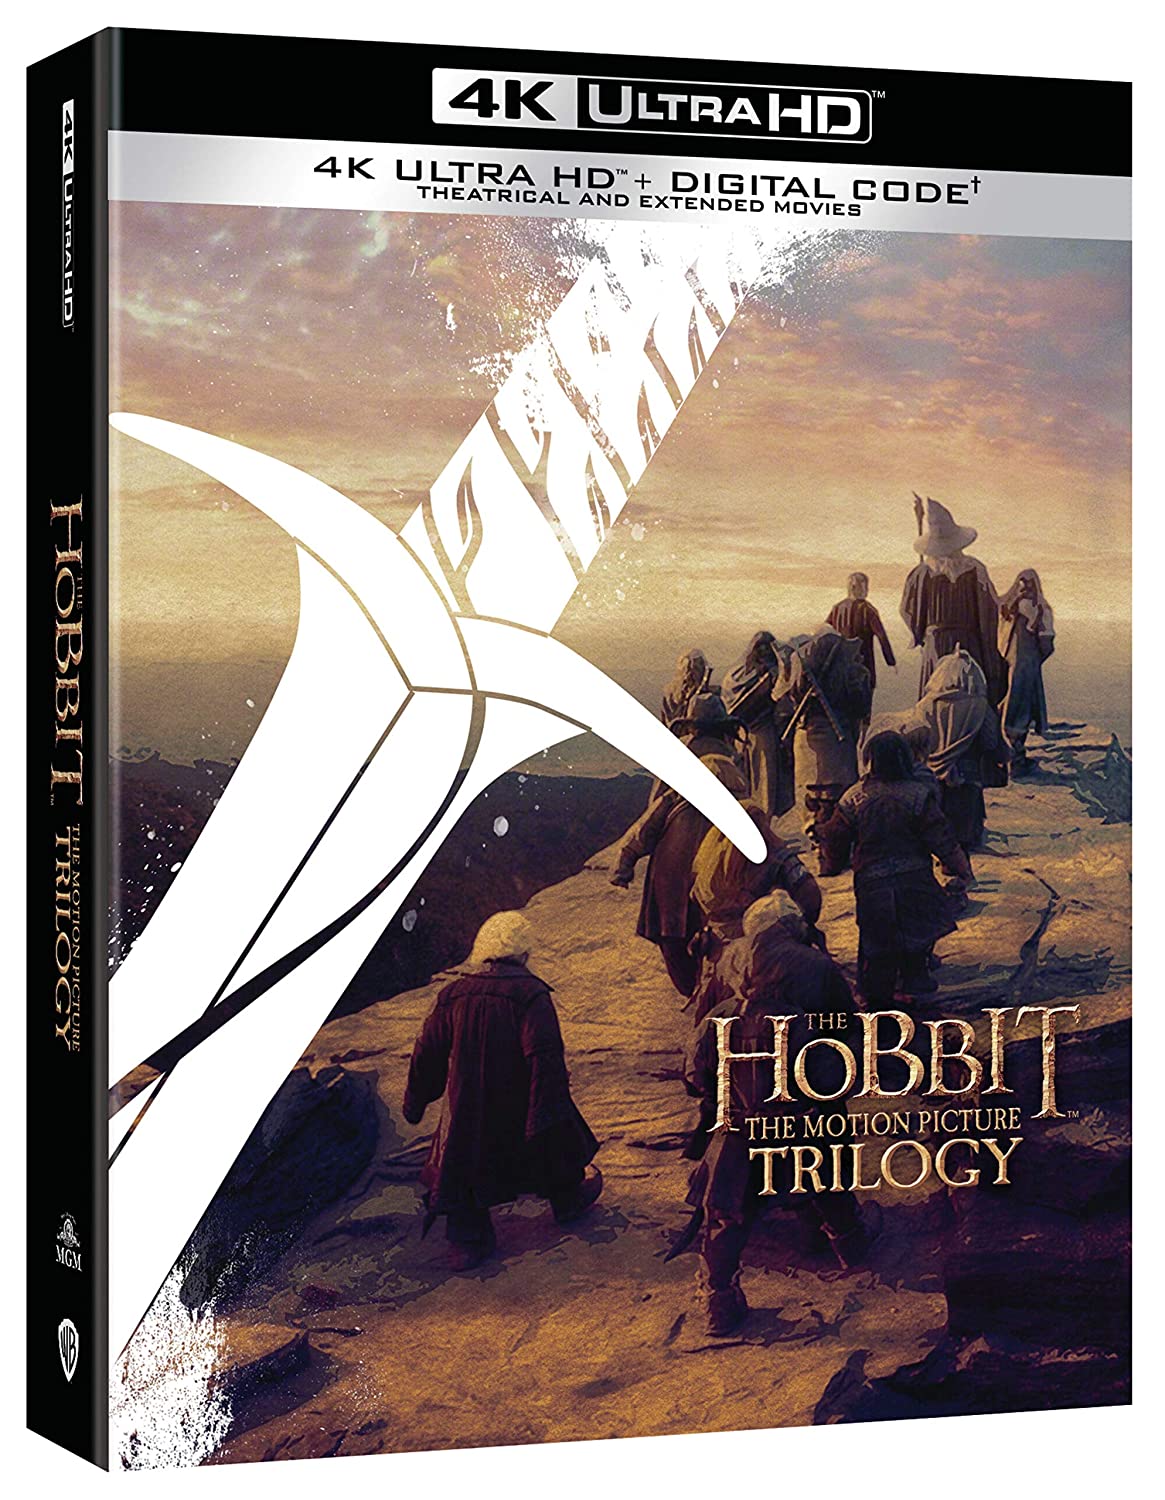 Buy Hobbit Blu Ray online